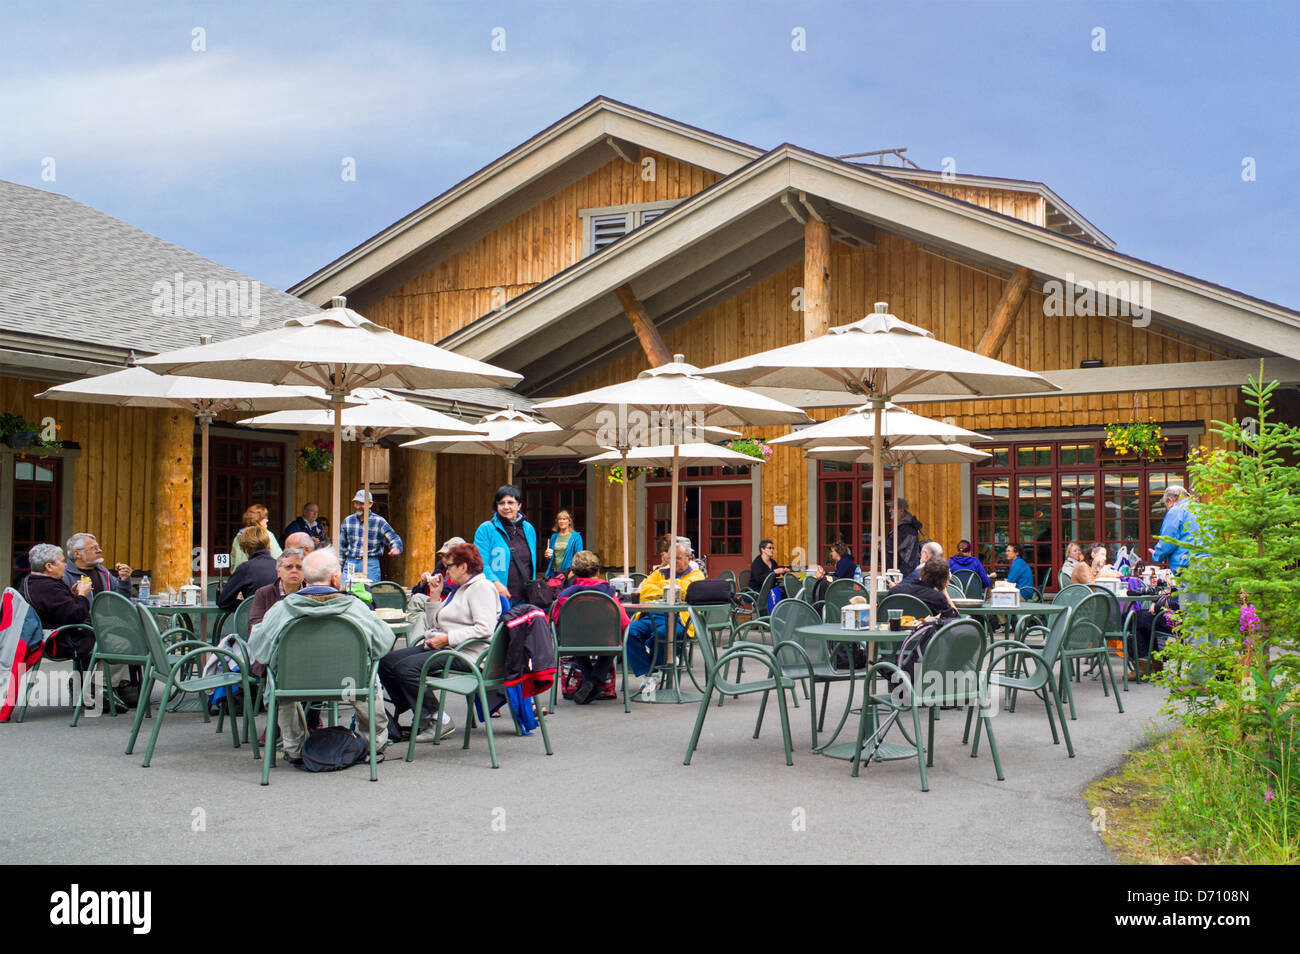 Tourists enjoy the outdoor cafe at Denali National Park Visitors Center, Denali National Park, Alaska, USA Stock Photo